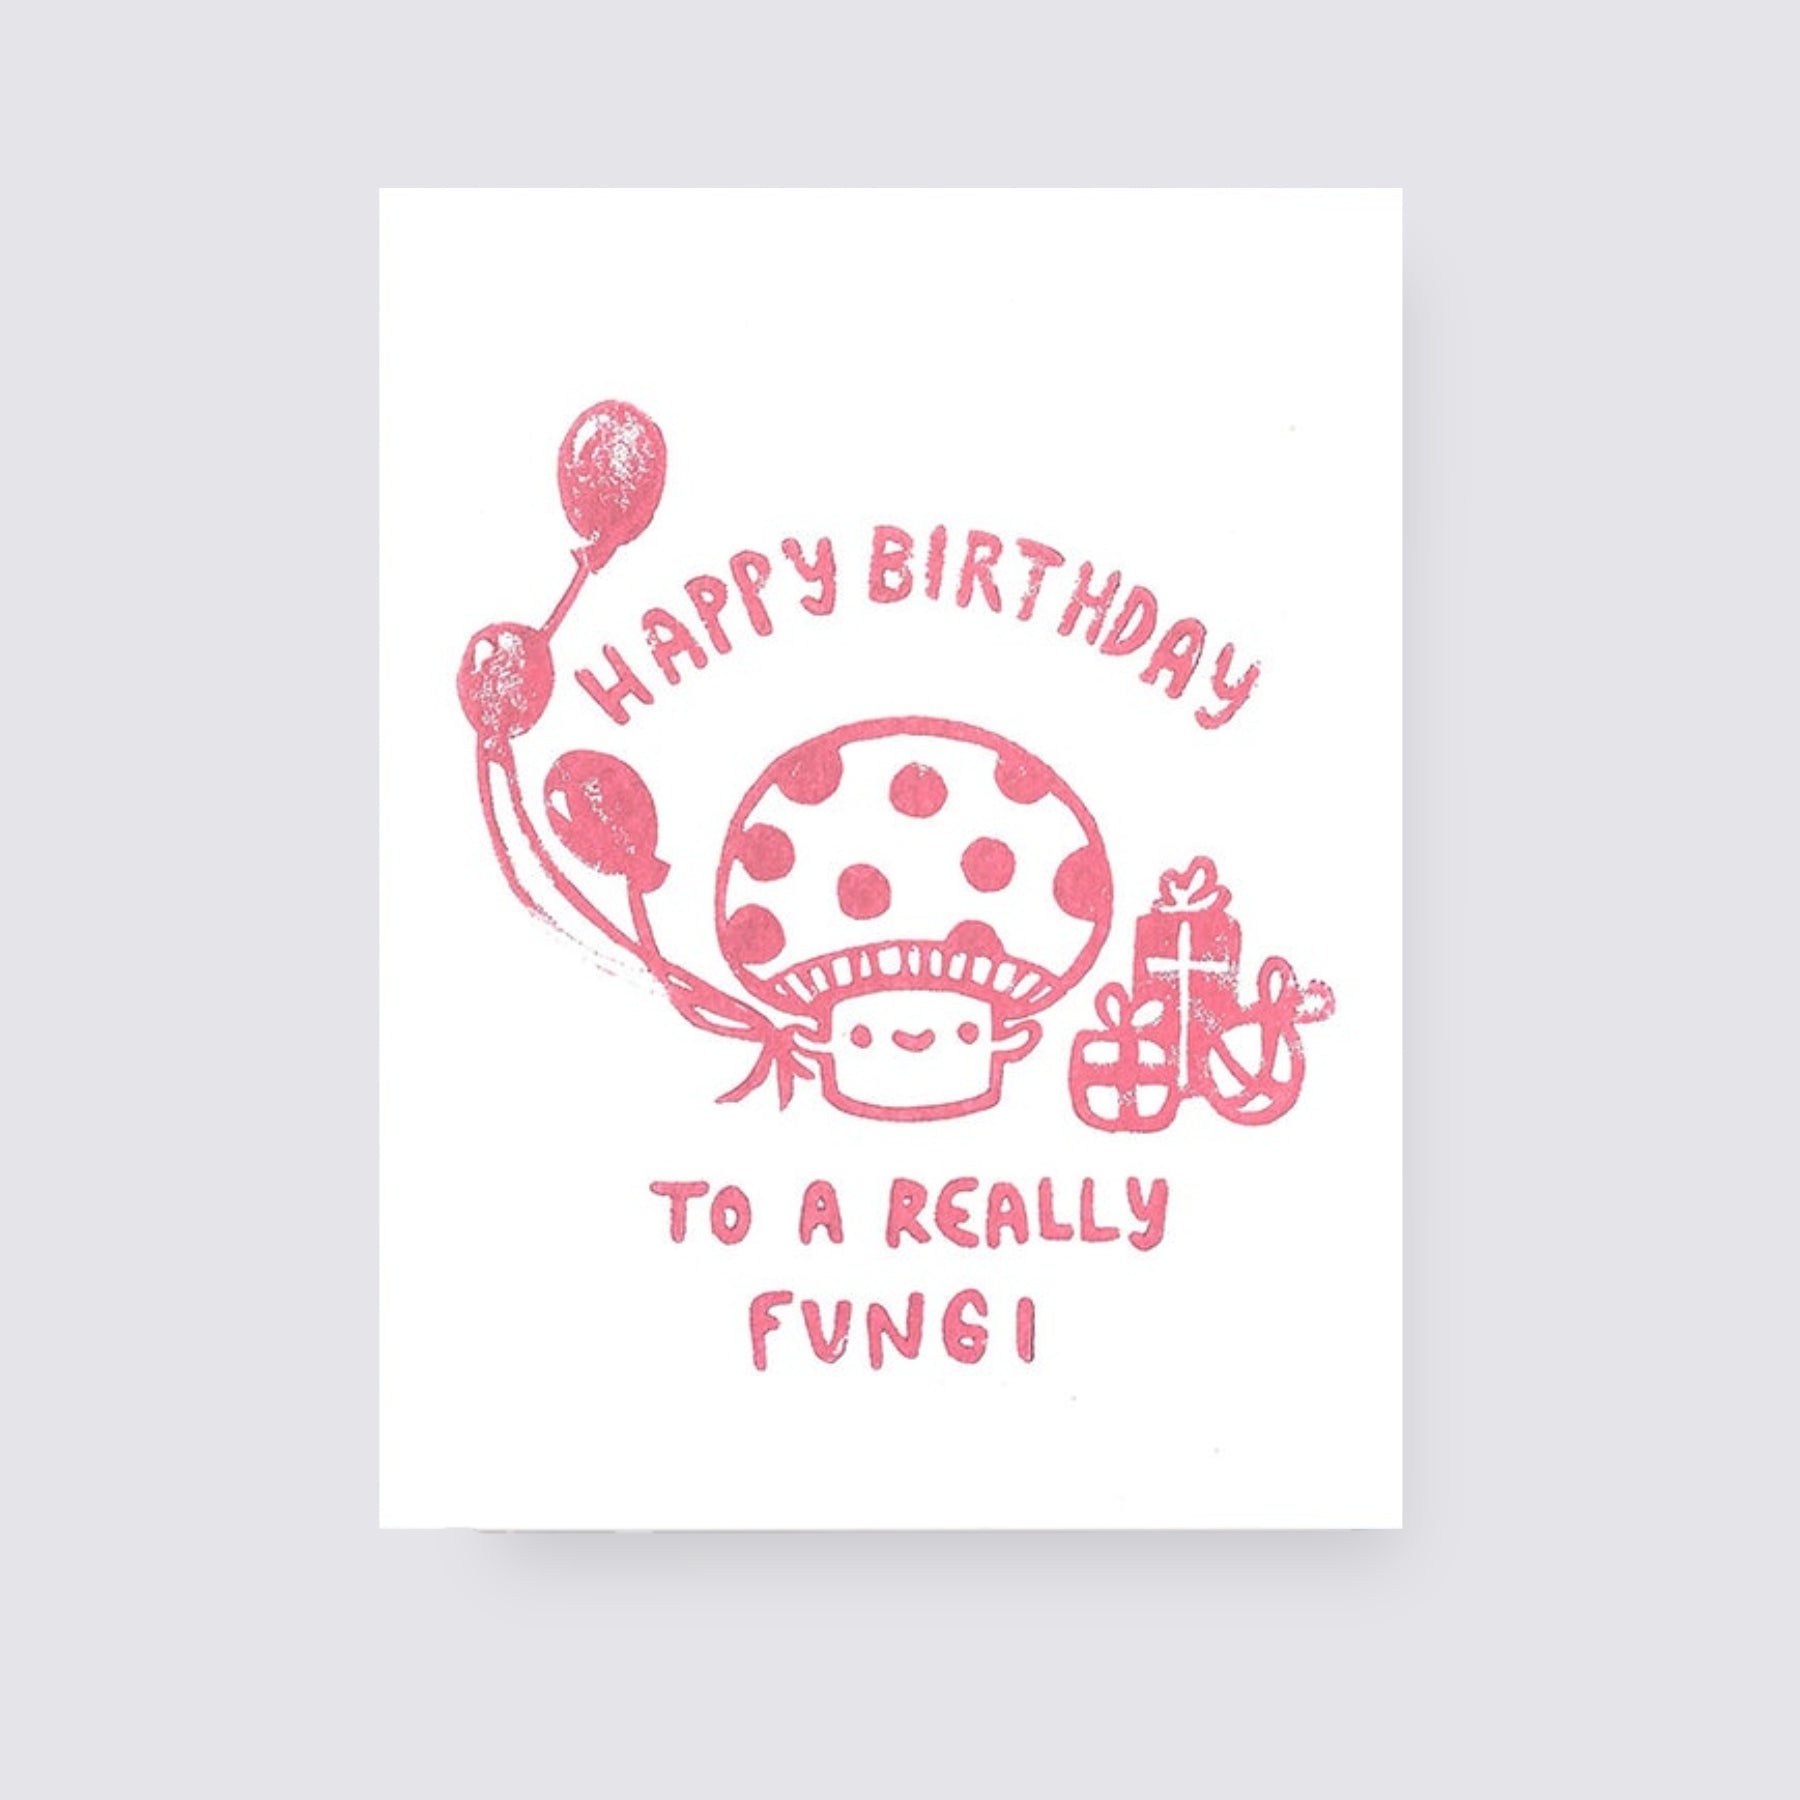 Funghi Birthday card